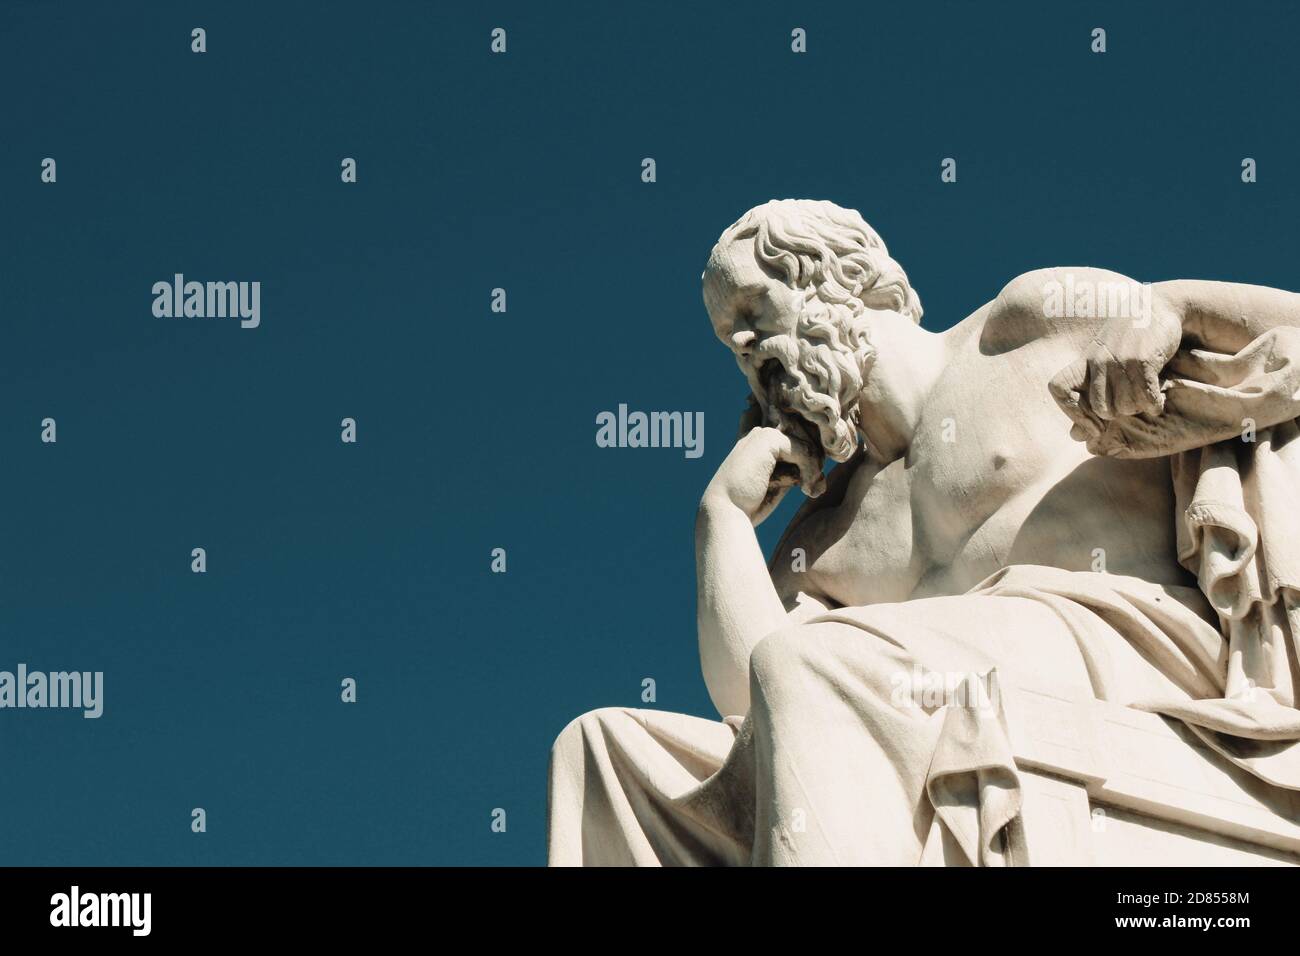 Statue des antiken griechischen Philosophen Sokrates in Athen, Griechenland, 9. Oktober 2020. Stockfoto